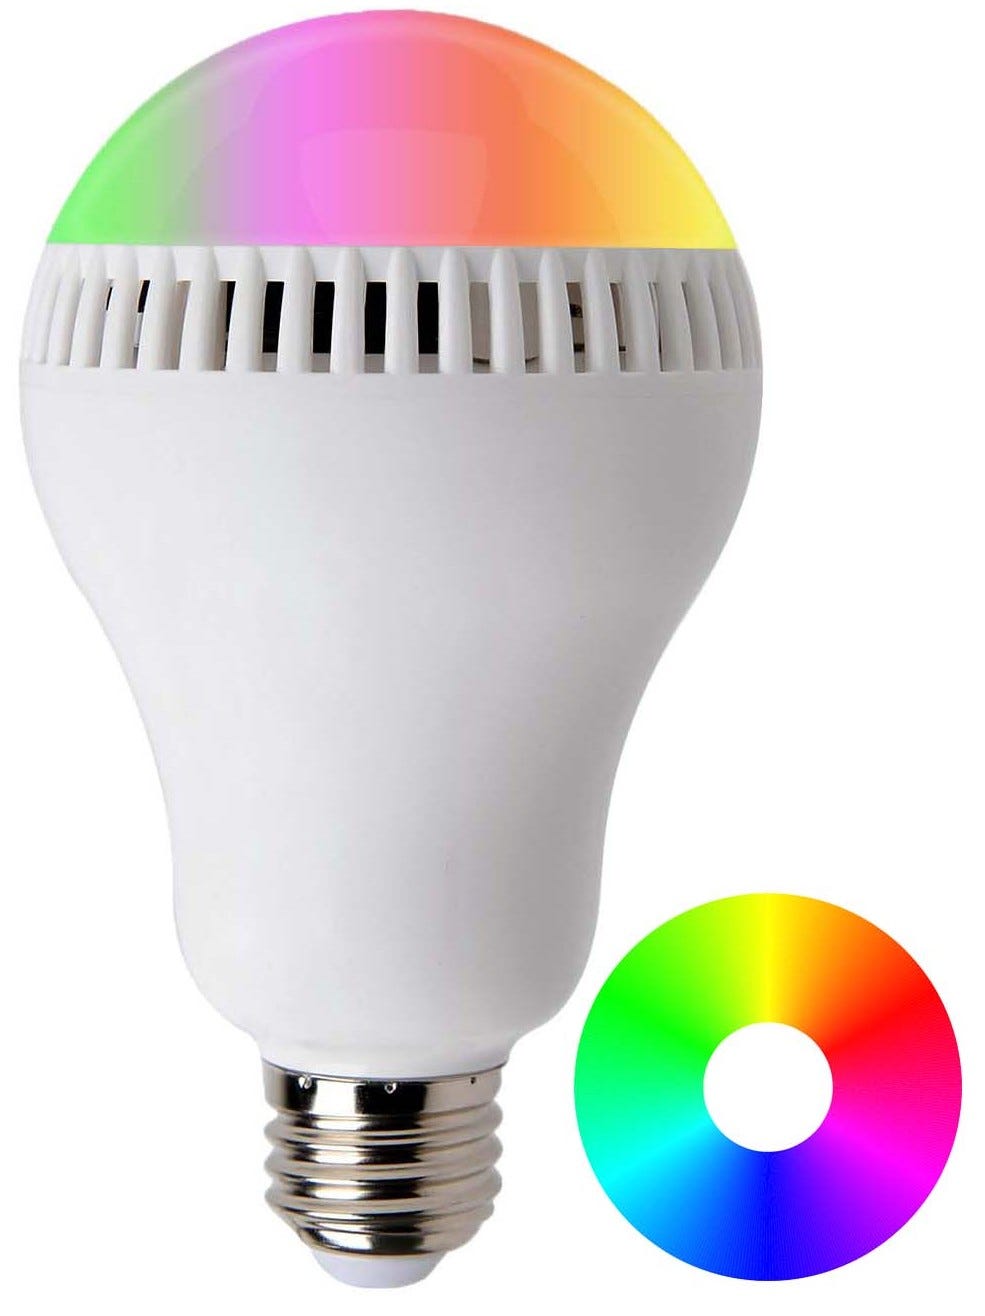 Ampoule LED E27 multicolore et enceinte musicale haut-parleur Bluetooth